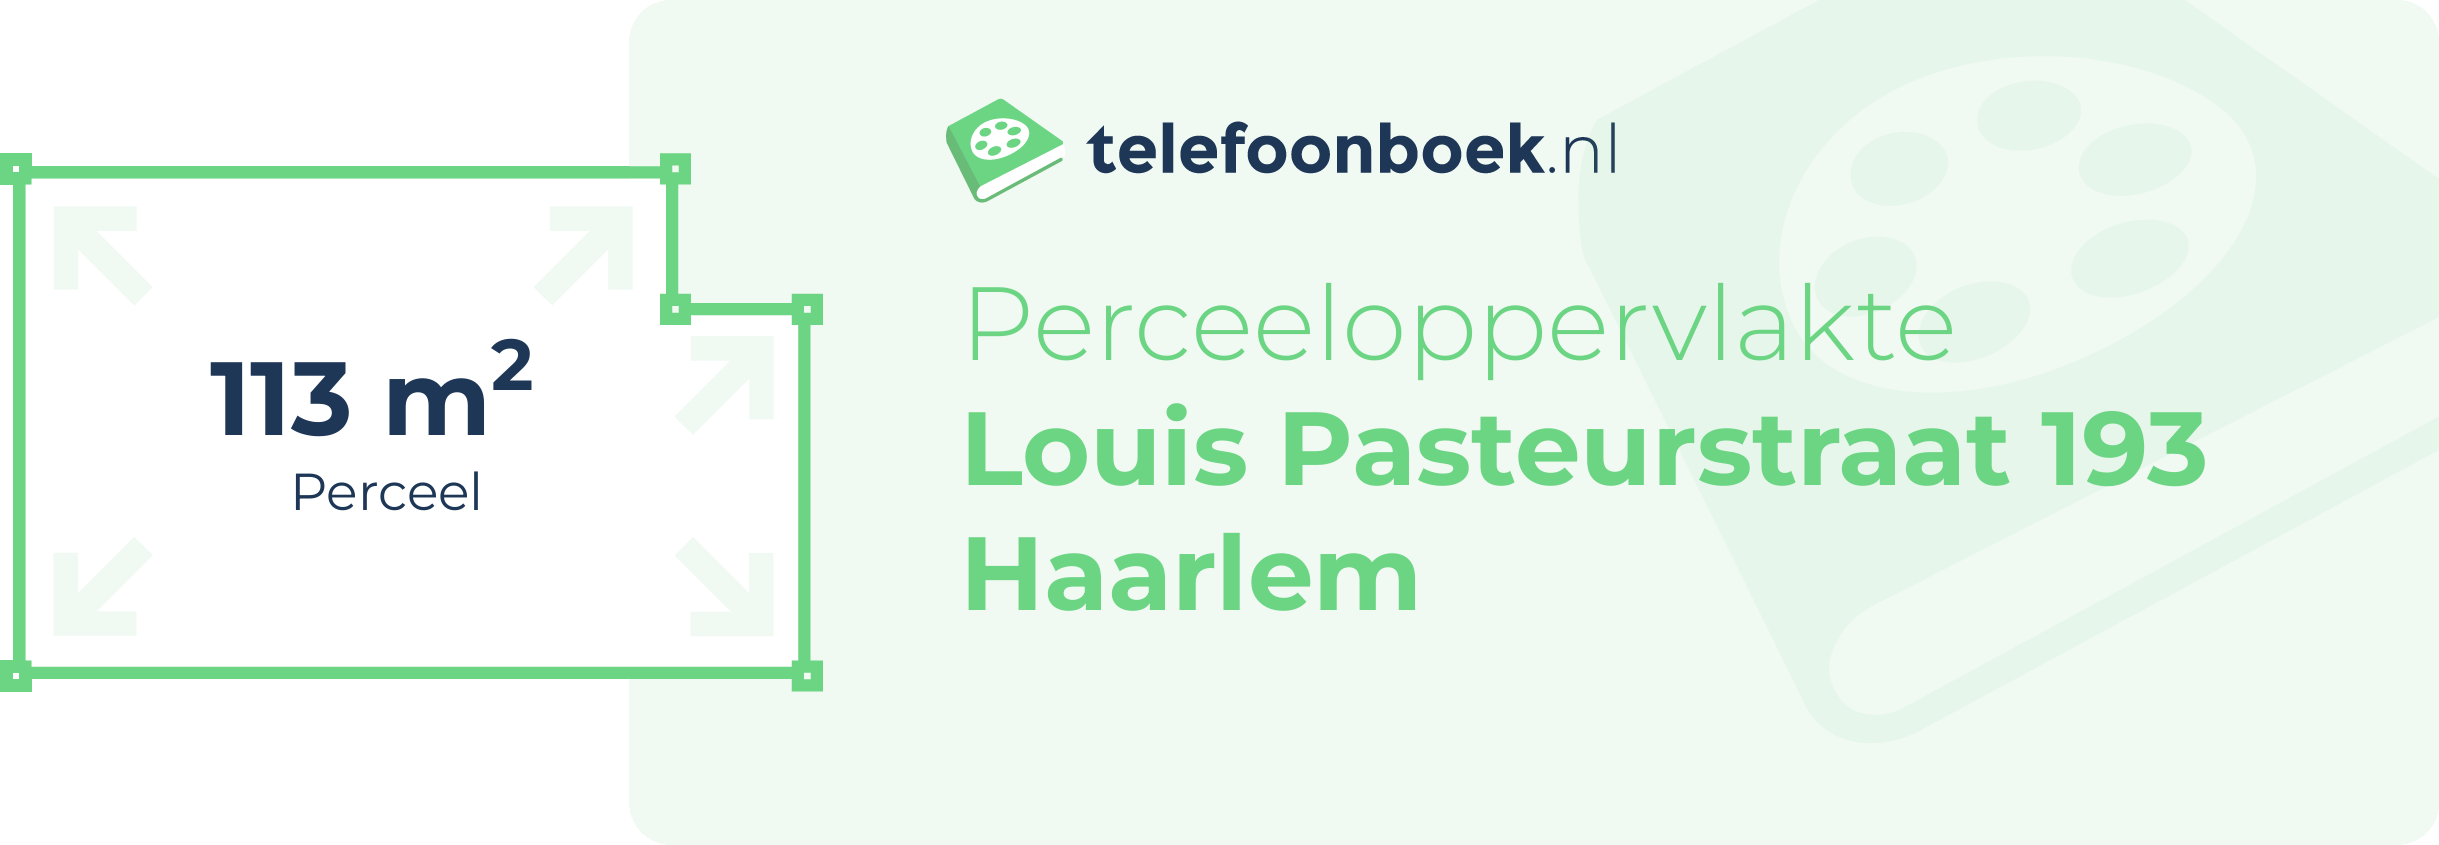 Perceeloppervlakte Louis Pasteurstraat 193 Haarlem